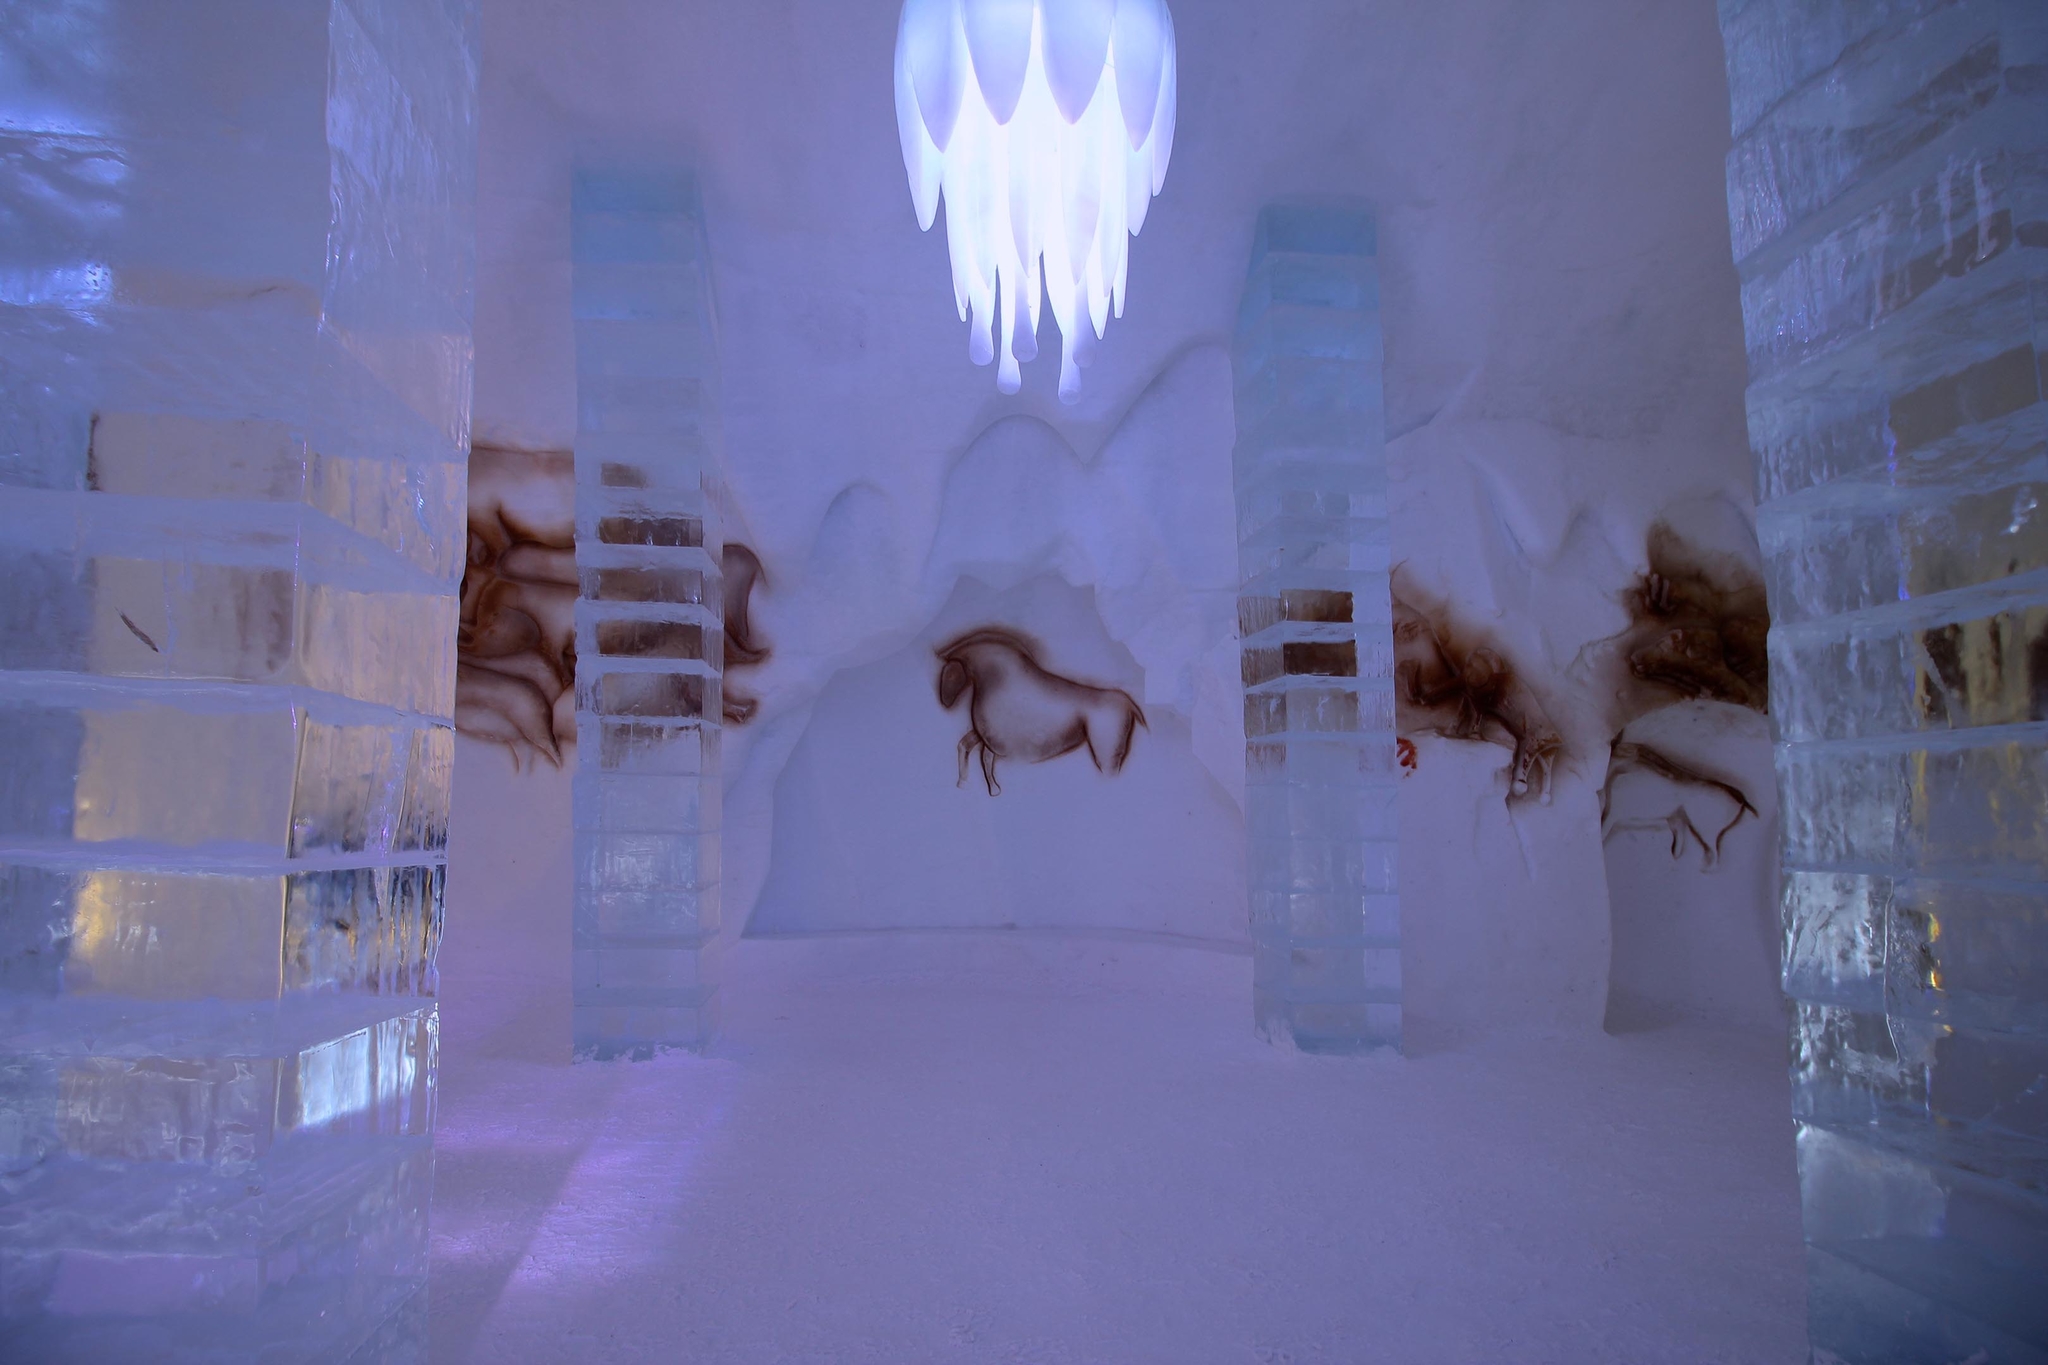 Hôtel de glace pendant l'une des plus belles saisons du Québec